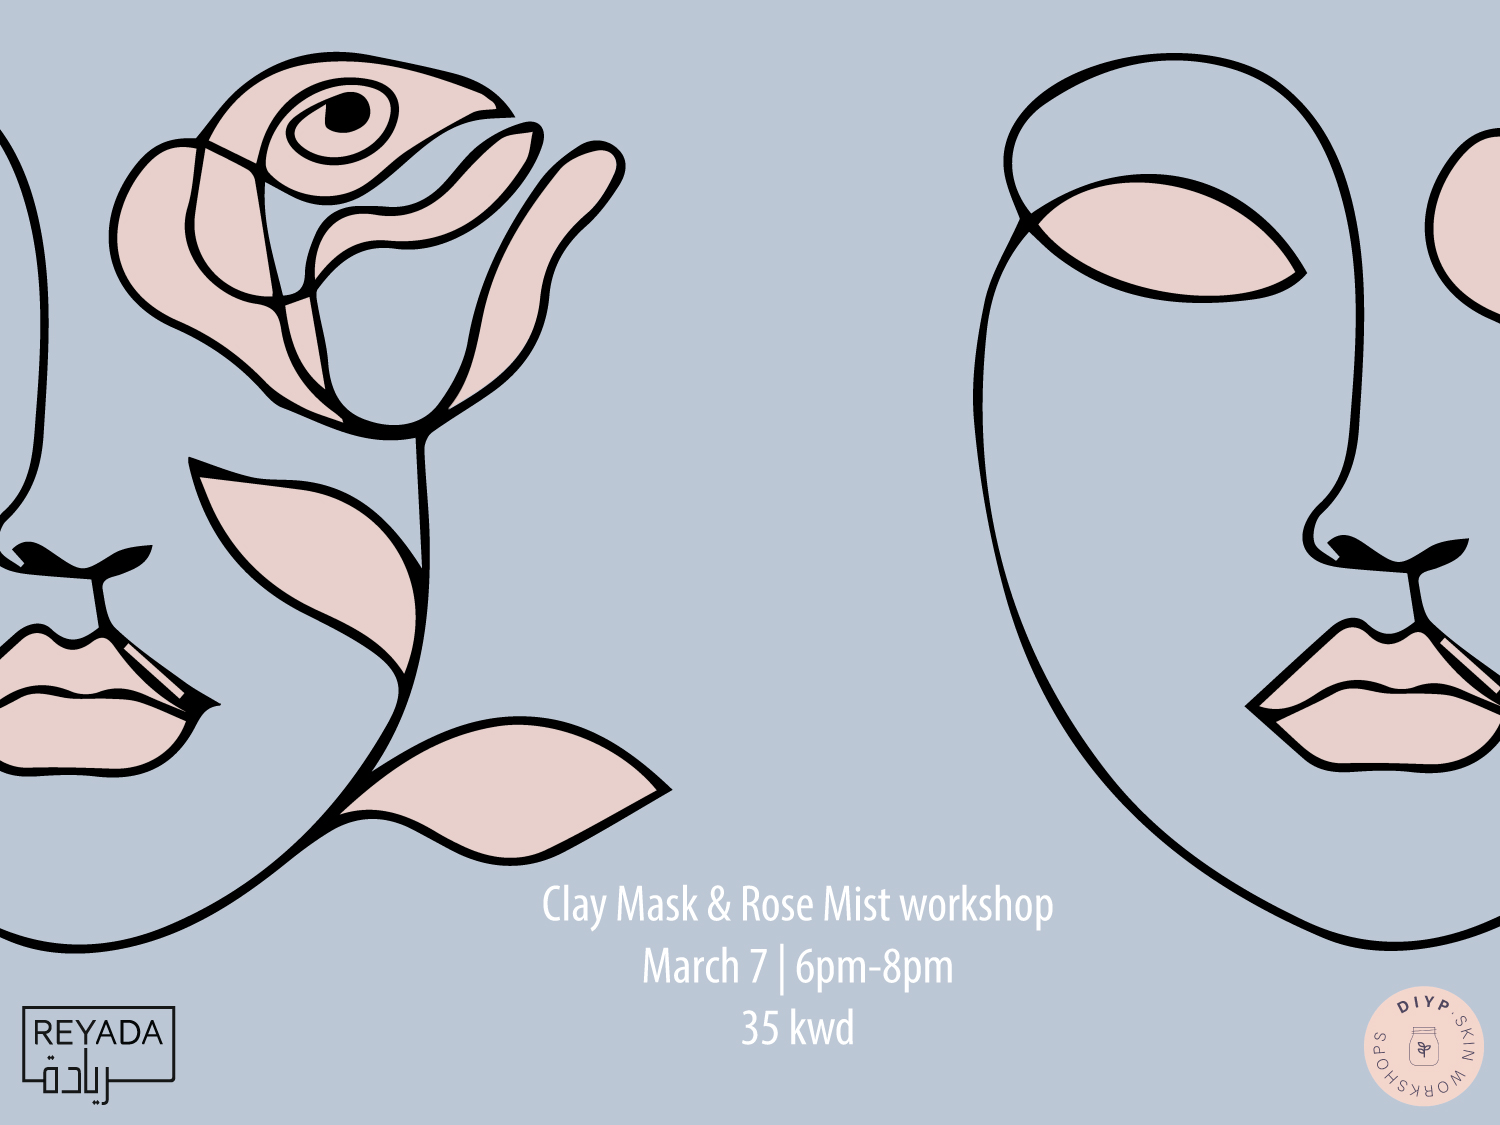 DIYP Clay Mask & Rose Mist Workshop